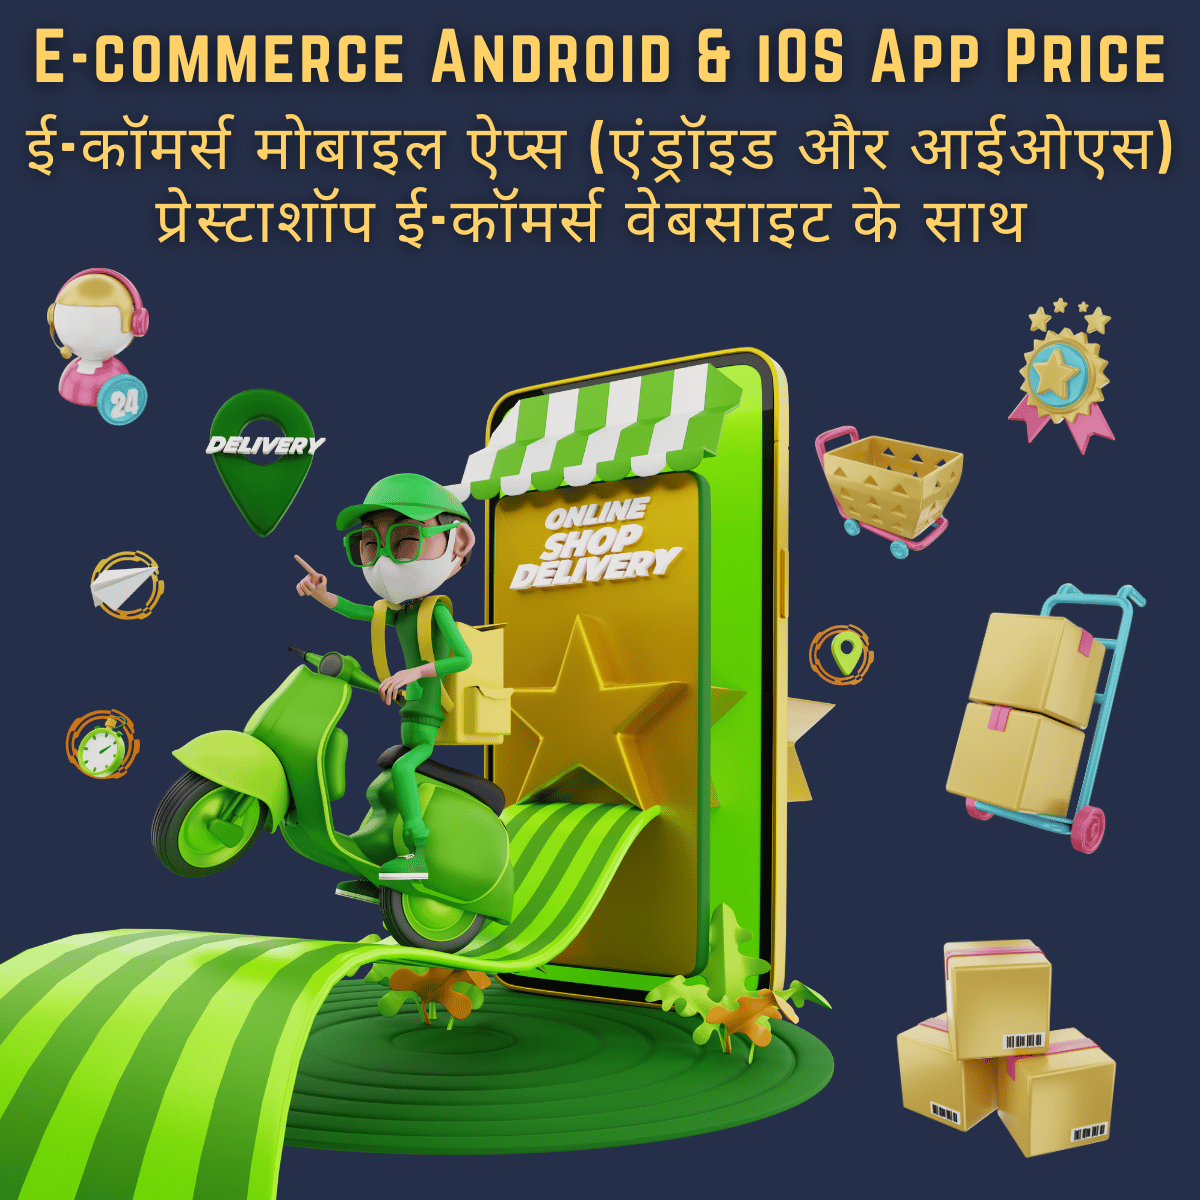 E-commerce Android & iOS App Price

ई-कॉमर्स एंड्रॉइड और आईओएस ऐप की कीमत